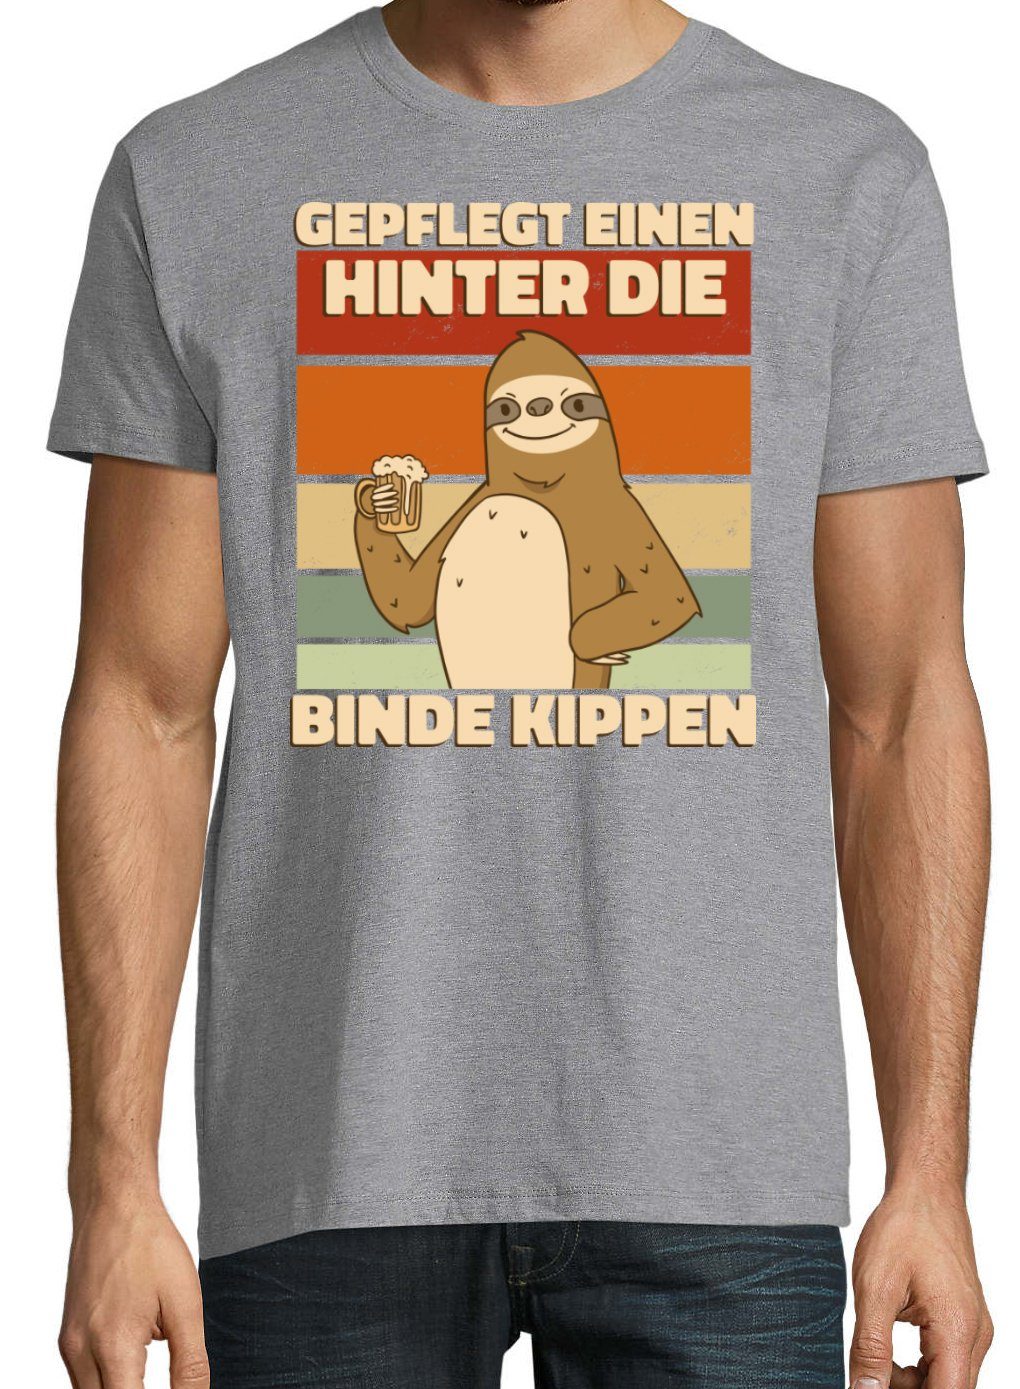 Youth Designz Print-Shirt Herren DIE T-Shirt GEPFLEGT und KIPPEN Spruch lustigem HINTER EINEN mit Grau Print Fun-Look BINDE